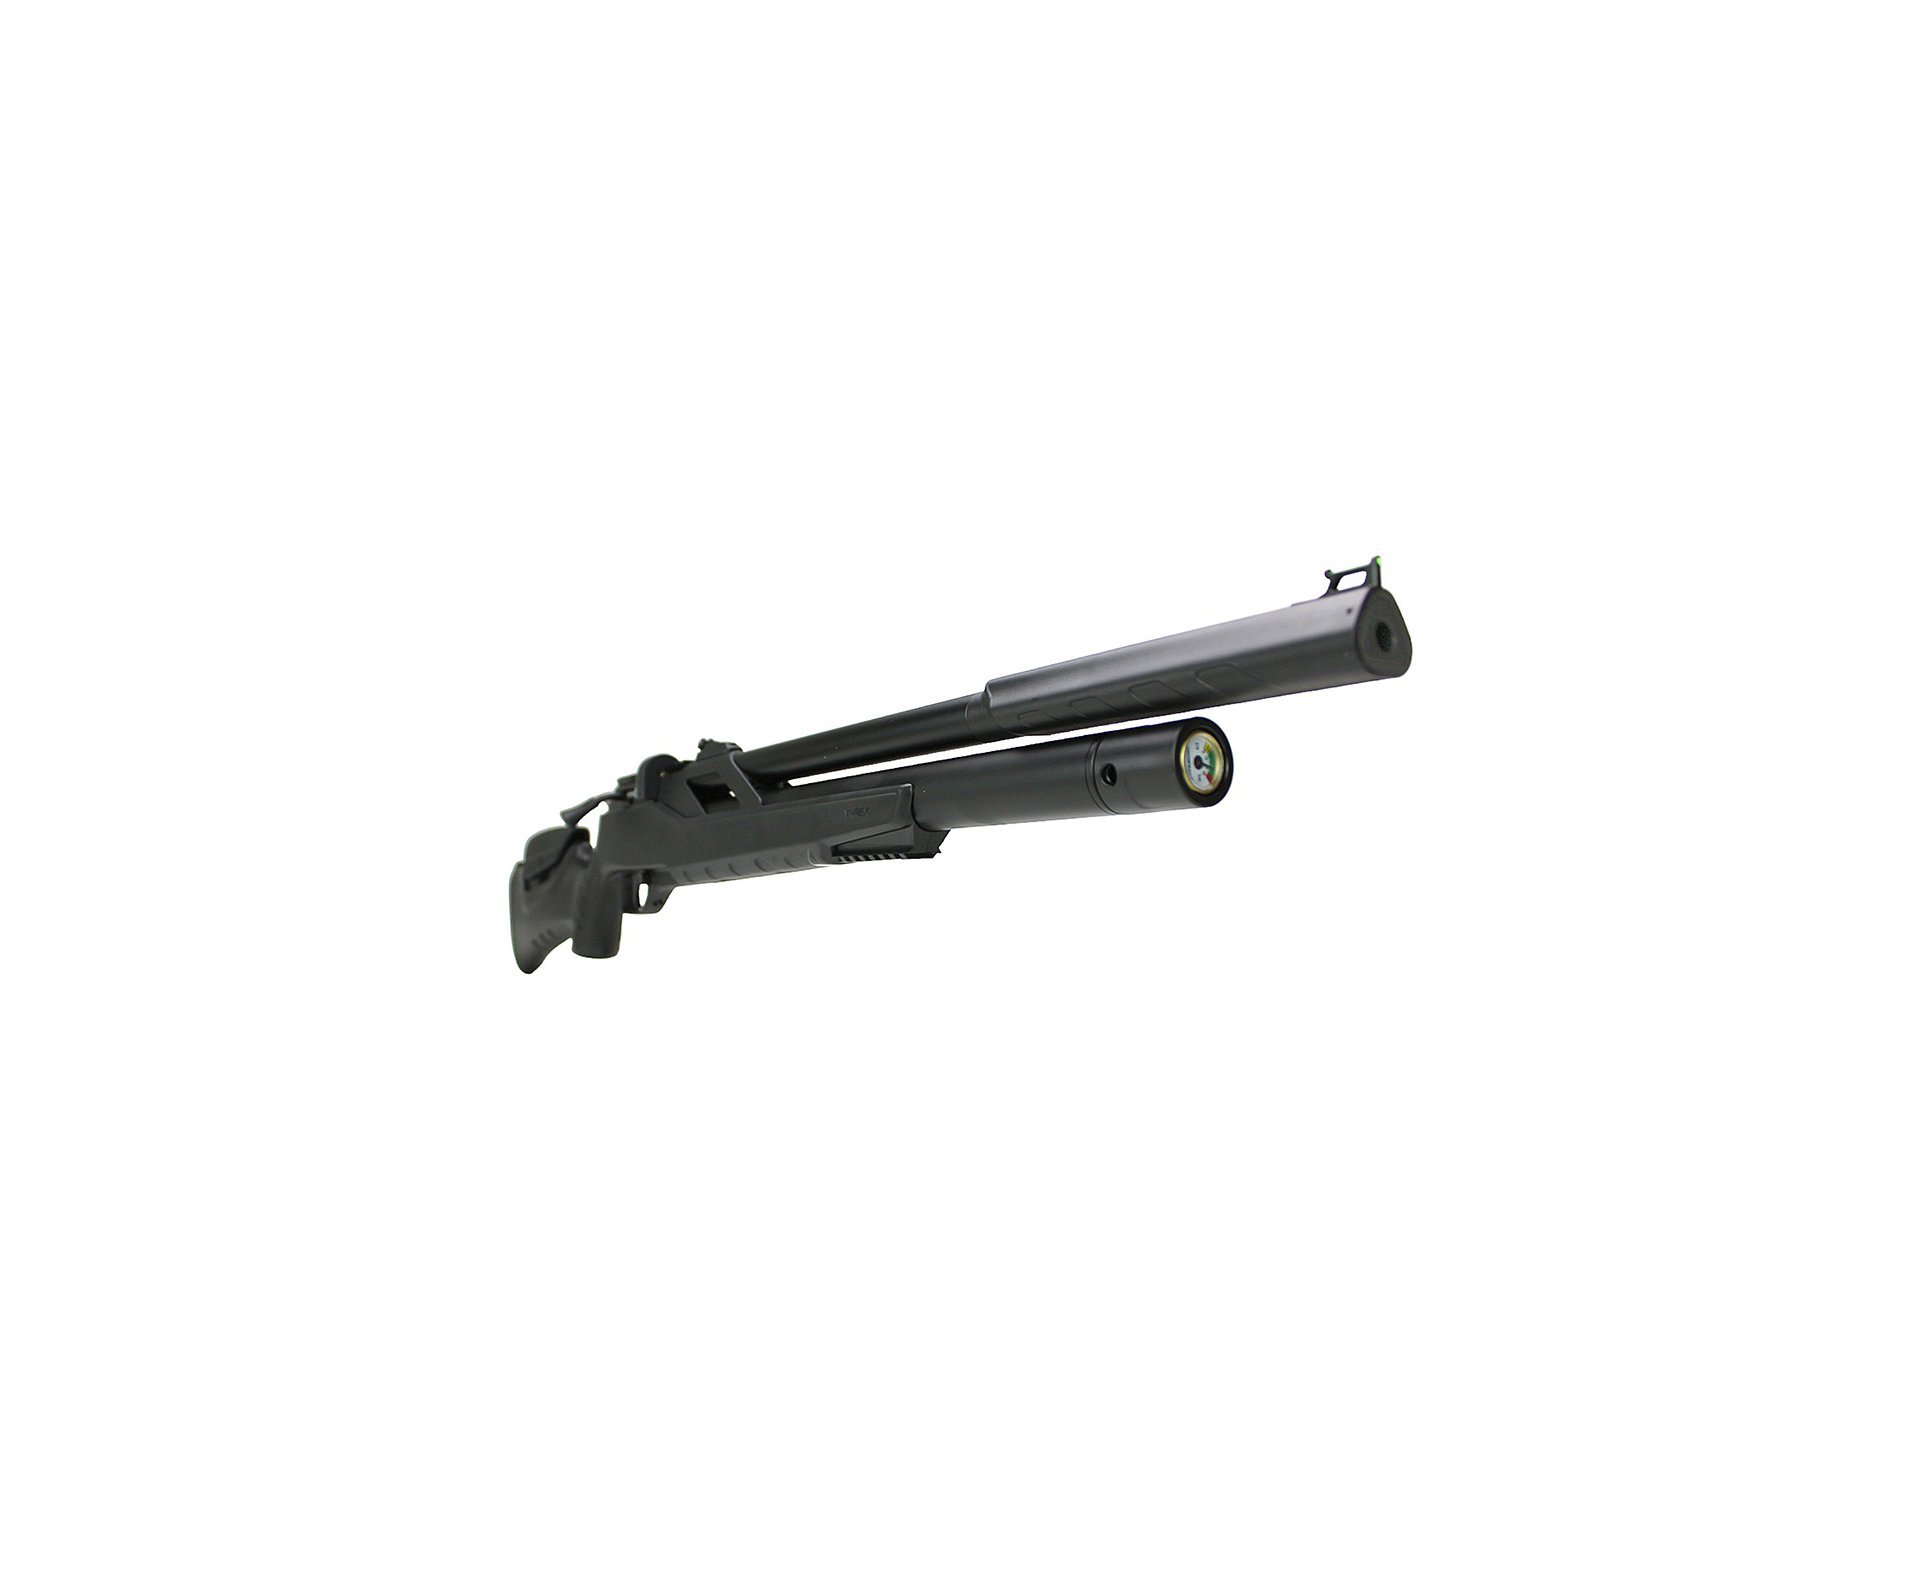 Carabina de Pressão PCP Artemis T-REX 4.5mm com Válvula Reguladora - Fixxar + Luneta 4-16x50 + Mount